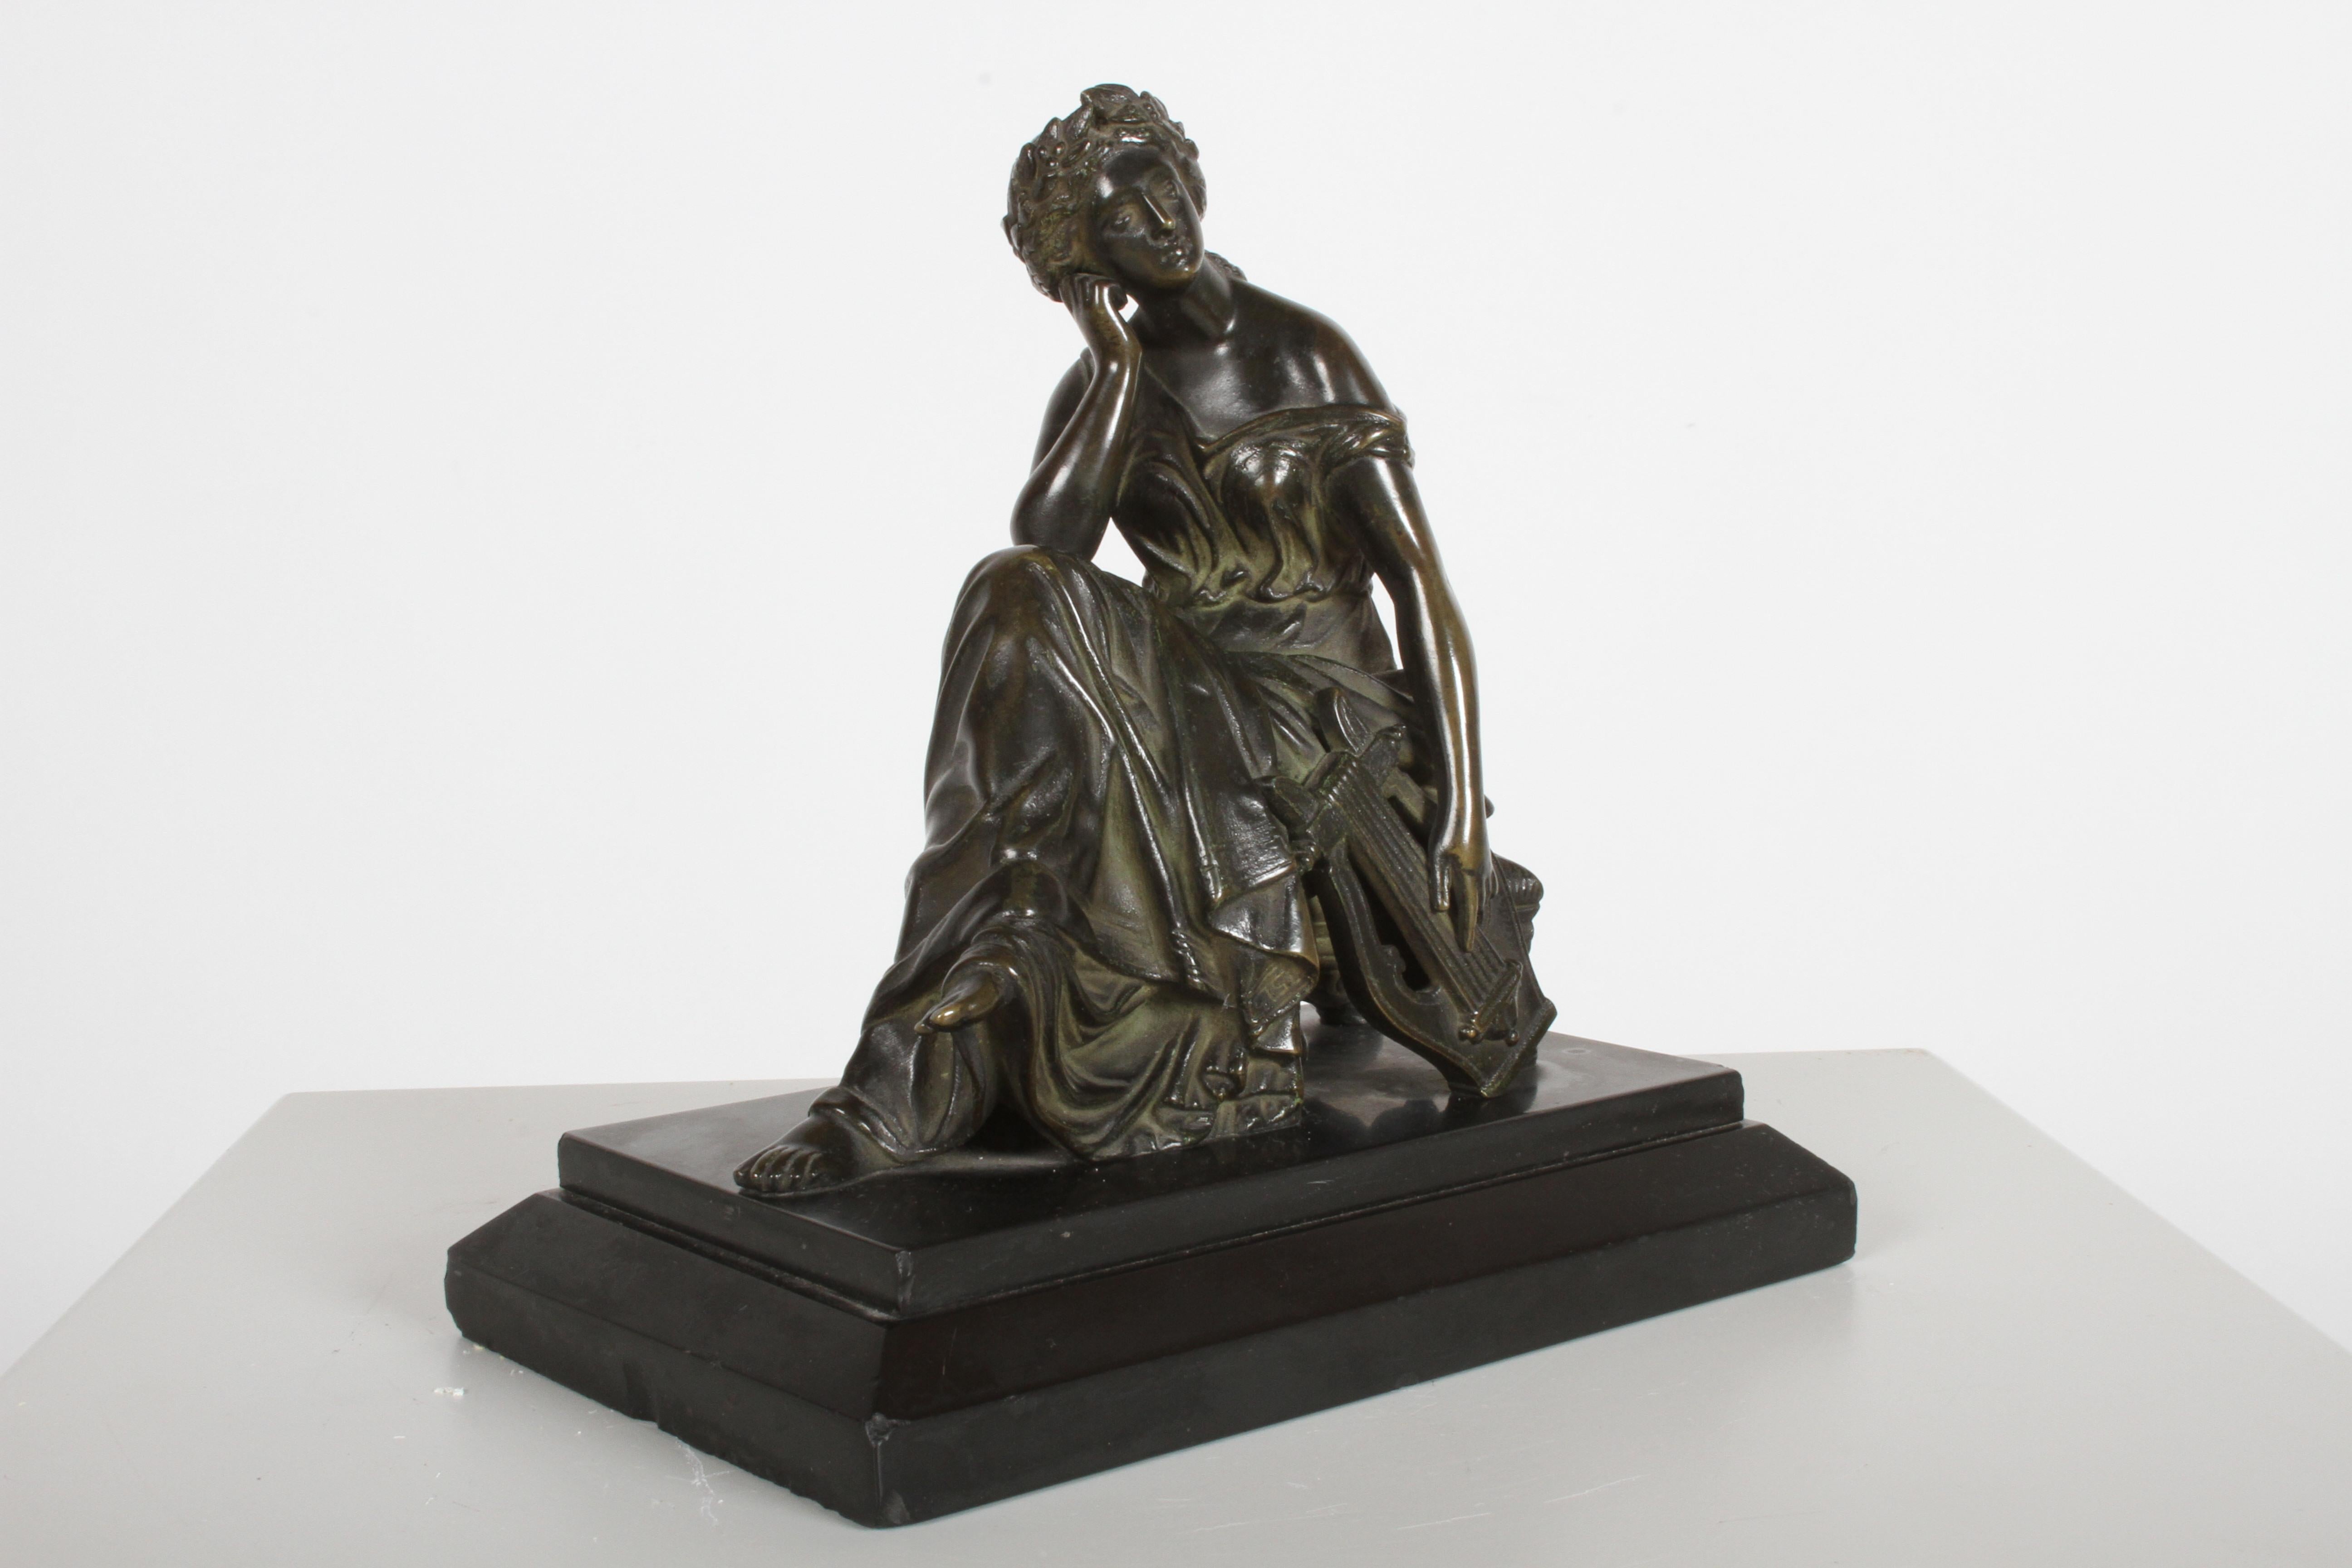 Neoklassizistische Bronze von Louis Alfred Habert (Franzose, 1824-1893), Figur der Muse aus dem späten 19. Jahrhundert: Terpsichore. Klassisch sitzende Frau mit Leier in der Hand und mit Blumen gekrönt auf schwarzem Marmorsockel. Auf der Leier